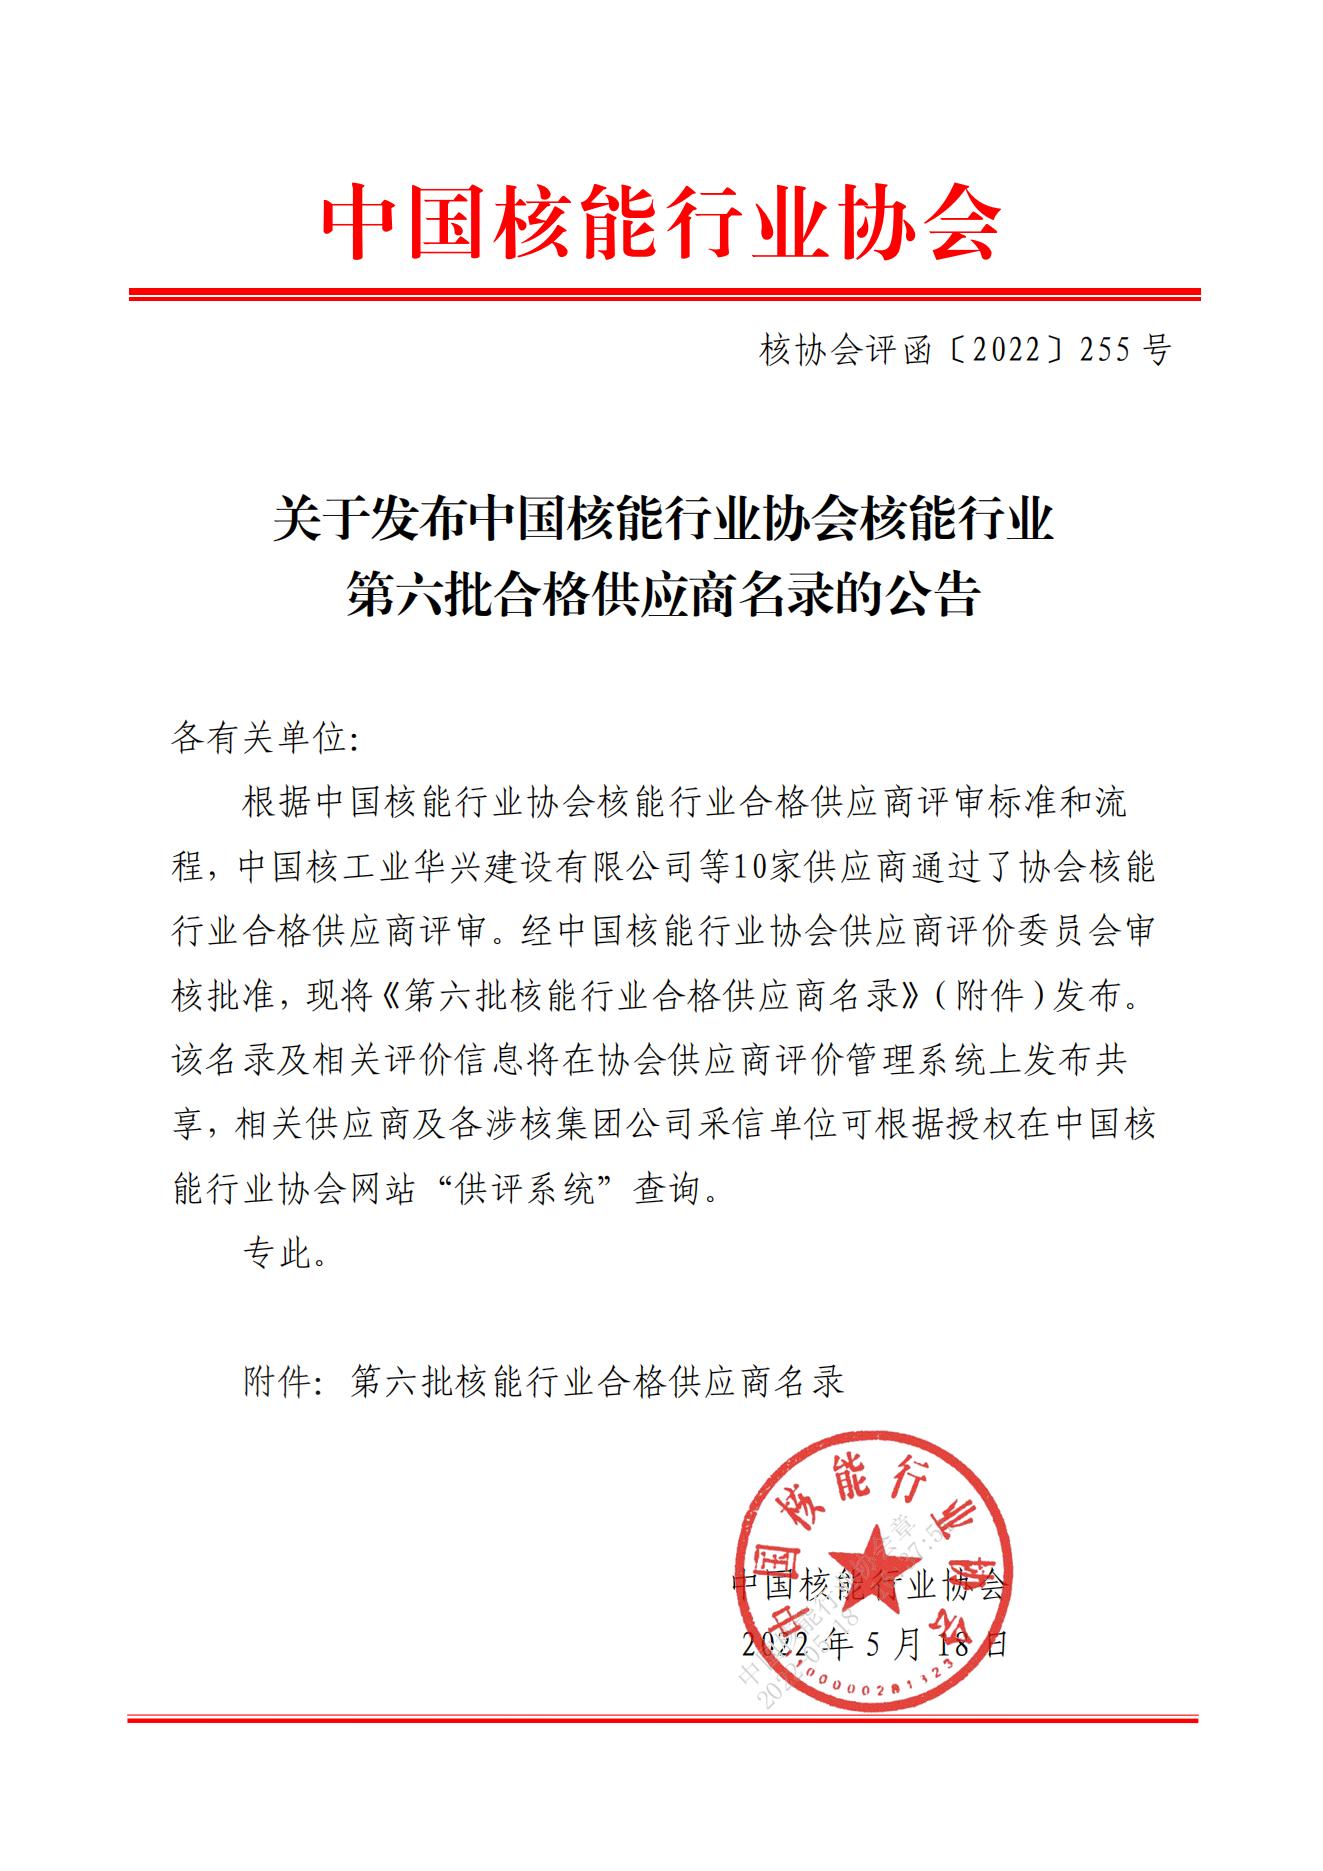 关于发布中国核能行业协会核能行业第六批合格供应商名录的公告_00.jpg